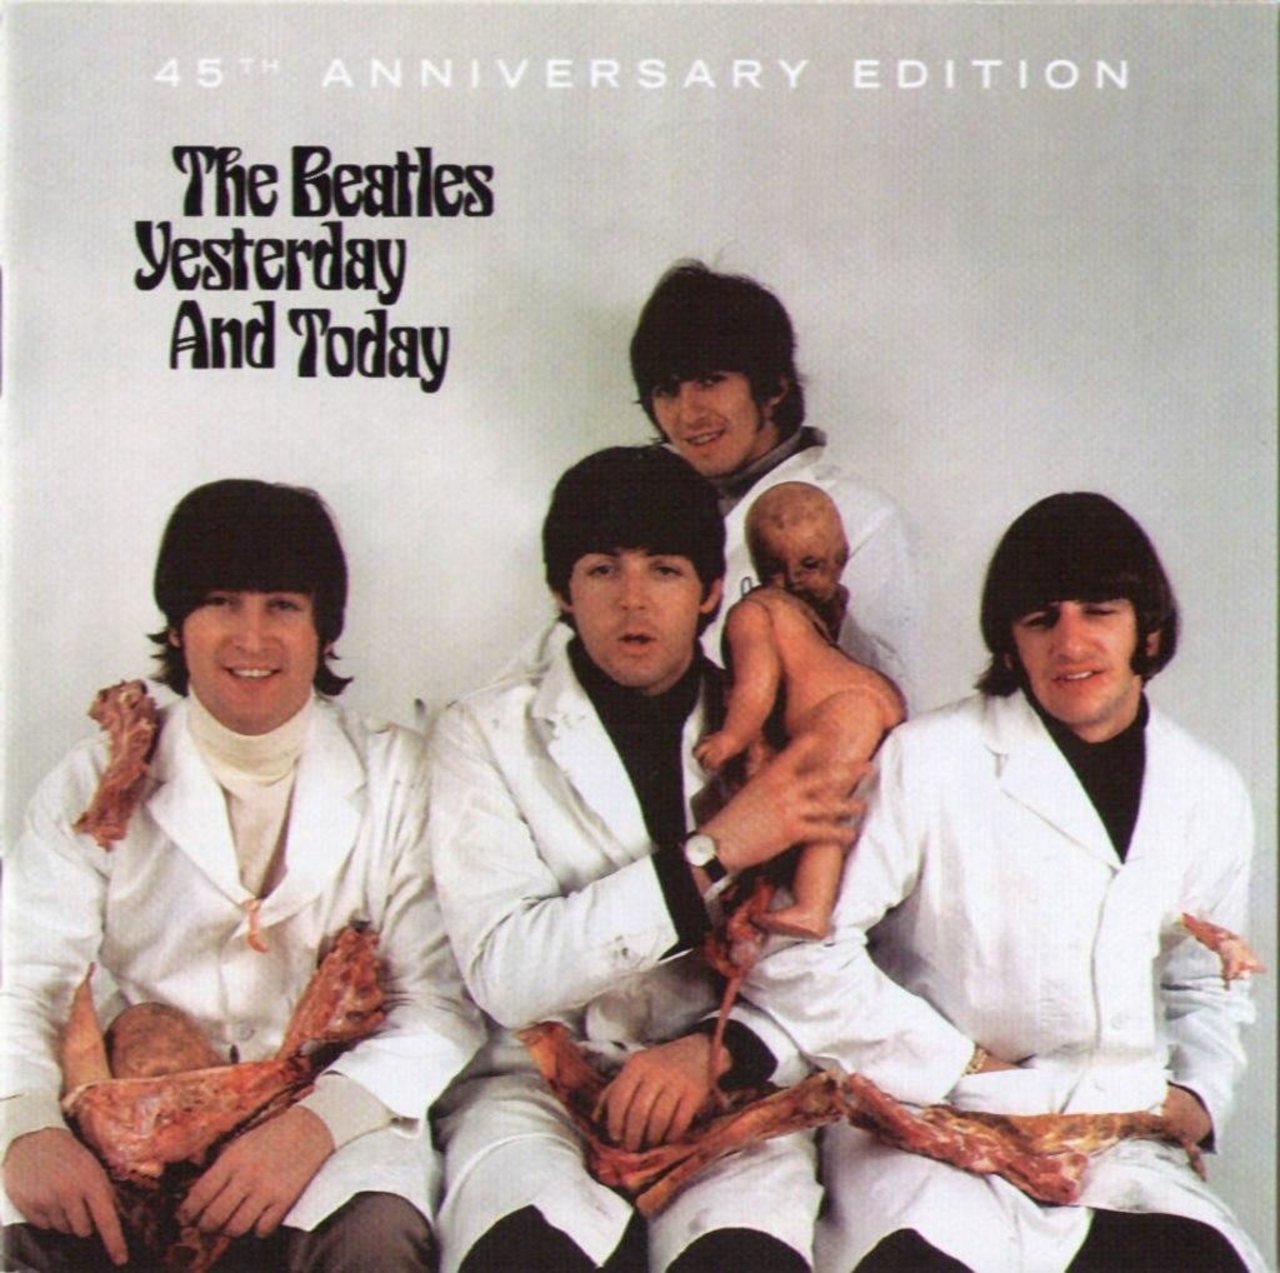 YESTERDAY AND TODAY: En 1966 The Beatles lanzaron una imagen con ellos  vestidos con bata blanca, ensangrentados y cargando muñecos tamaño bebé  natural, descabezados. La portada del disco recopilatorio fue retirada por